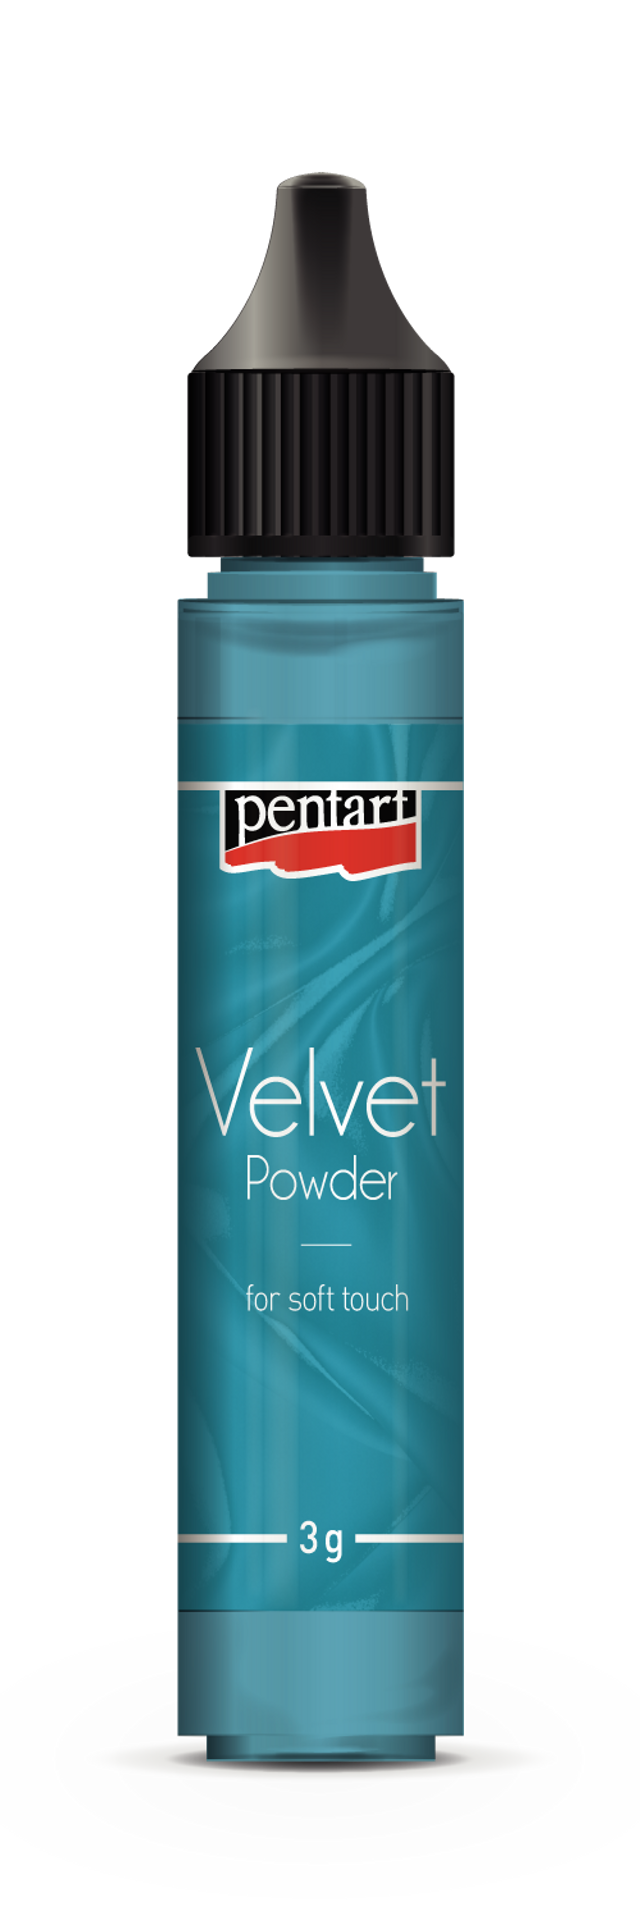 Pentart Velvet Powder Pen - Decoupage Queen